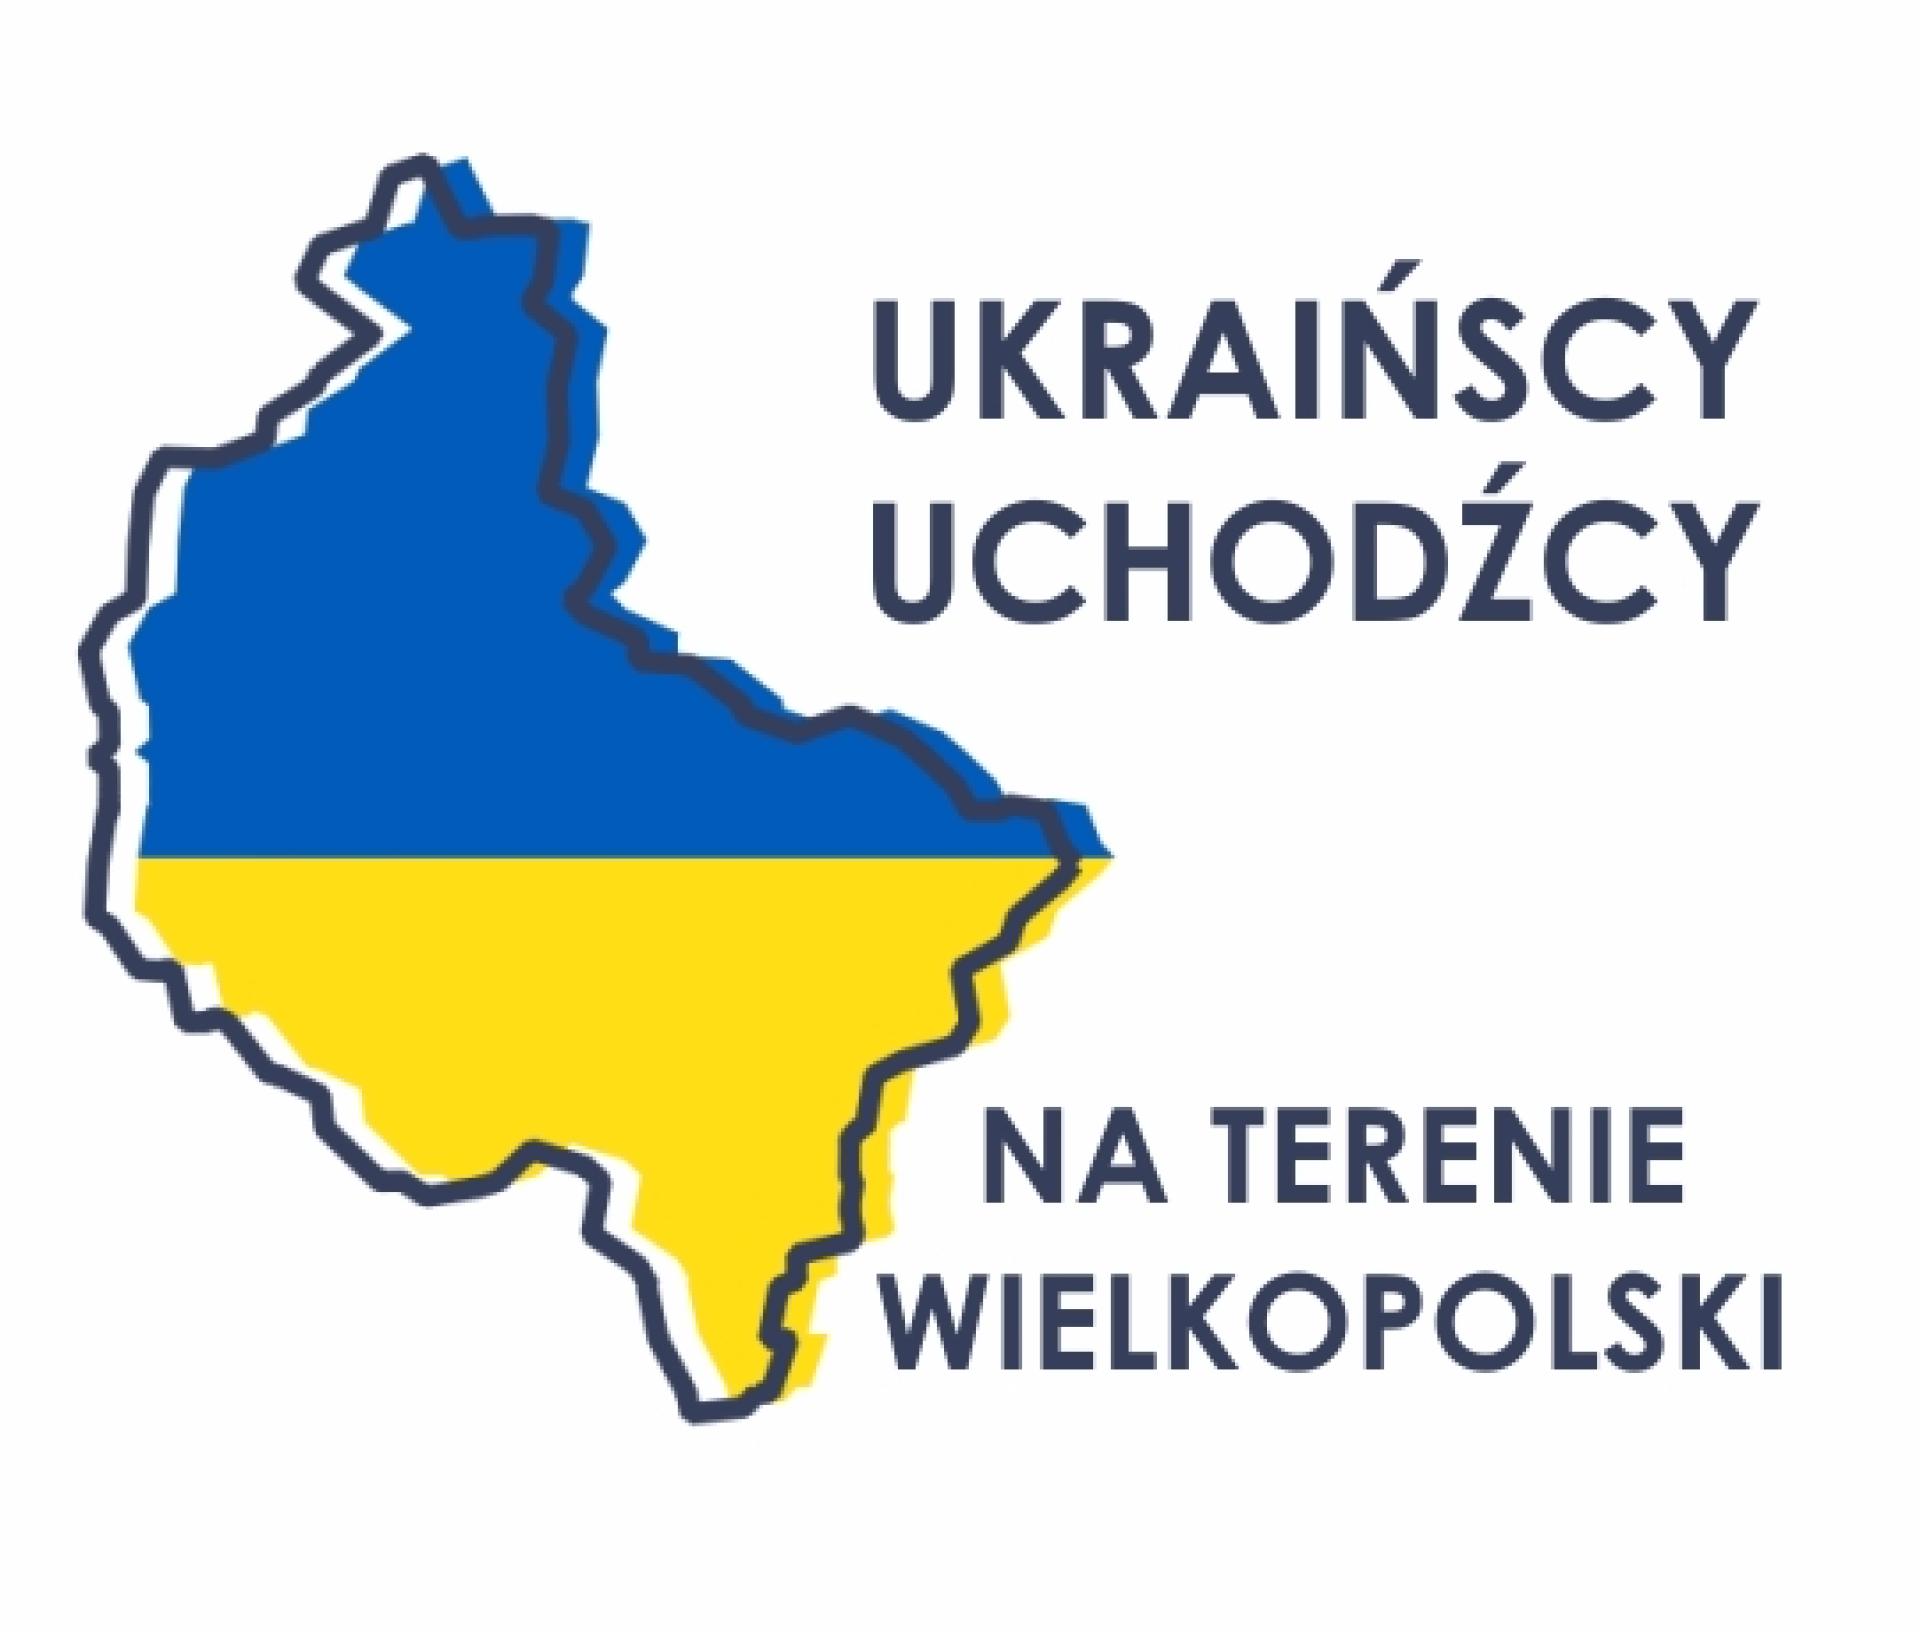 Ukraińscy uchodźcy na terenie Wielkopolski - zobacz więcej